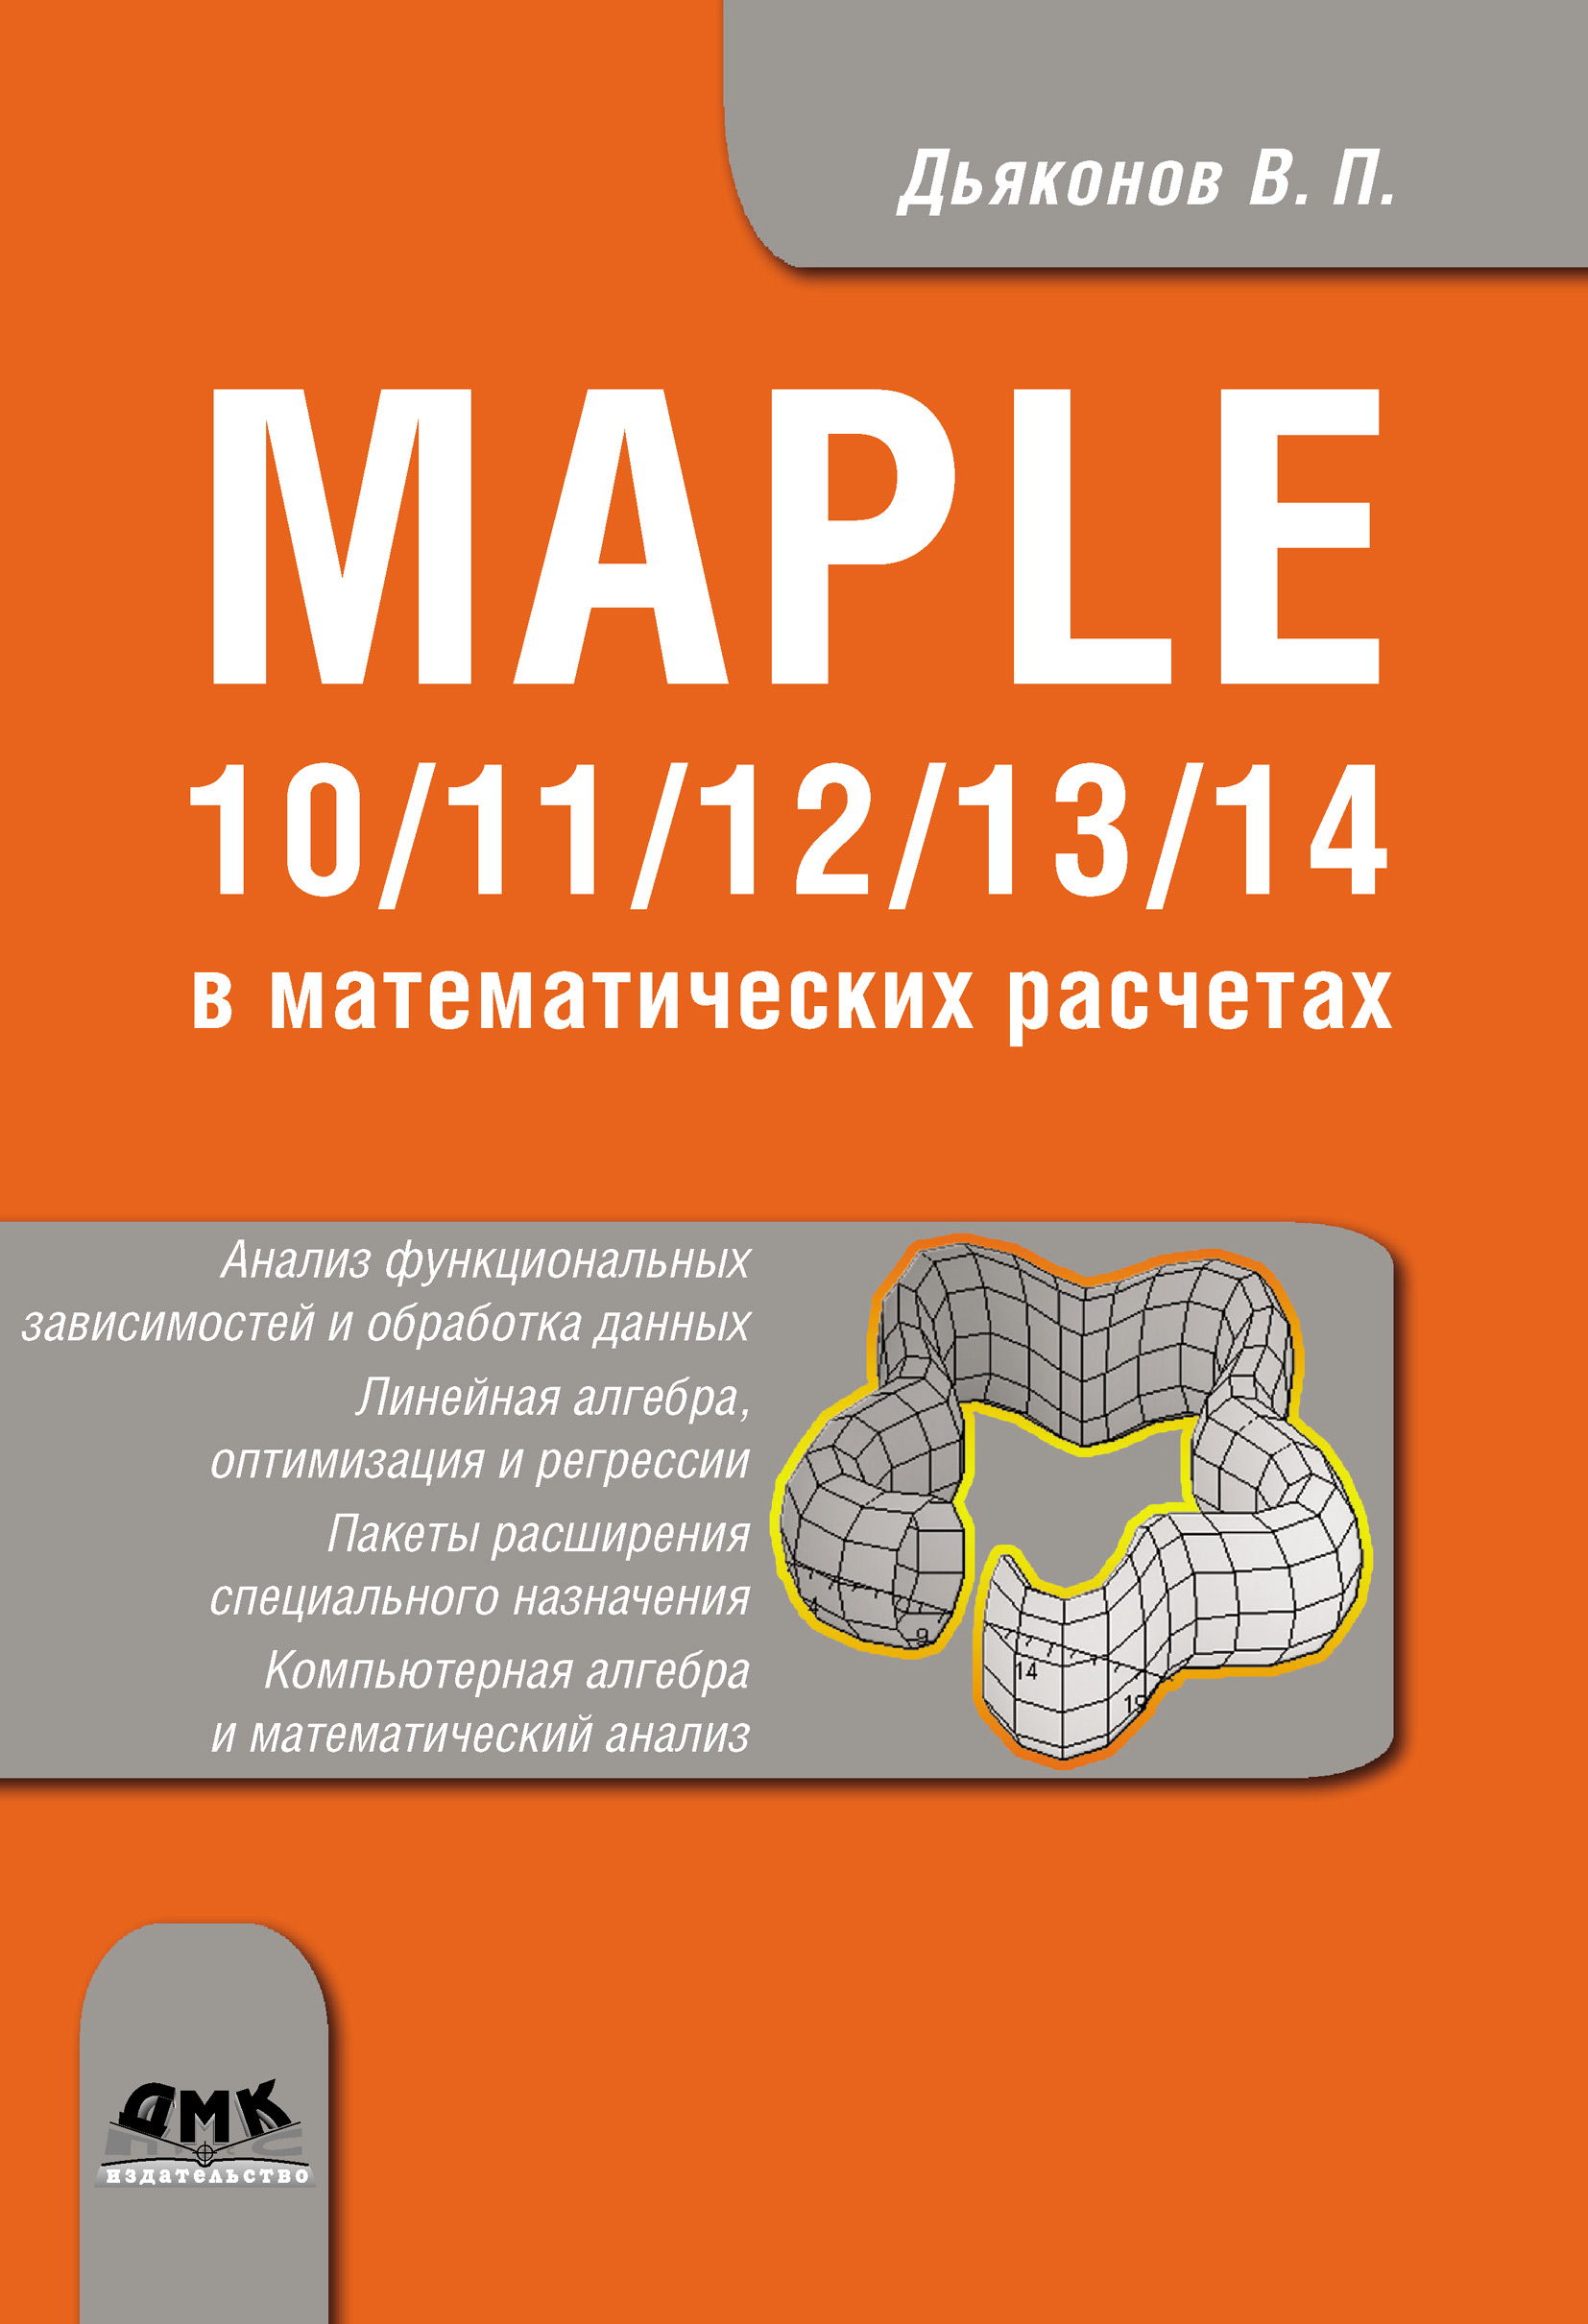 Книга  Maple 10/11/12/13/14 в математических расчетах созданная В. П. Дьяконов может относится к жанру математика, программы. Стоимость электронной книги Maple 10/11/12/13/14 в математических расчетах с идентификатором 6563599 составляет 559.00 руб.